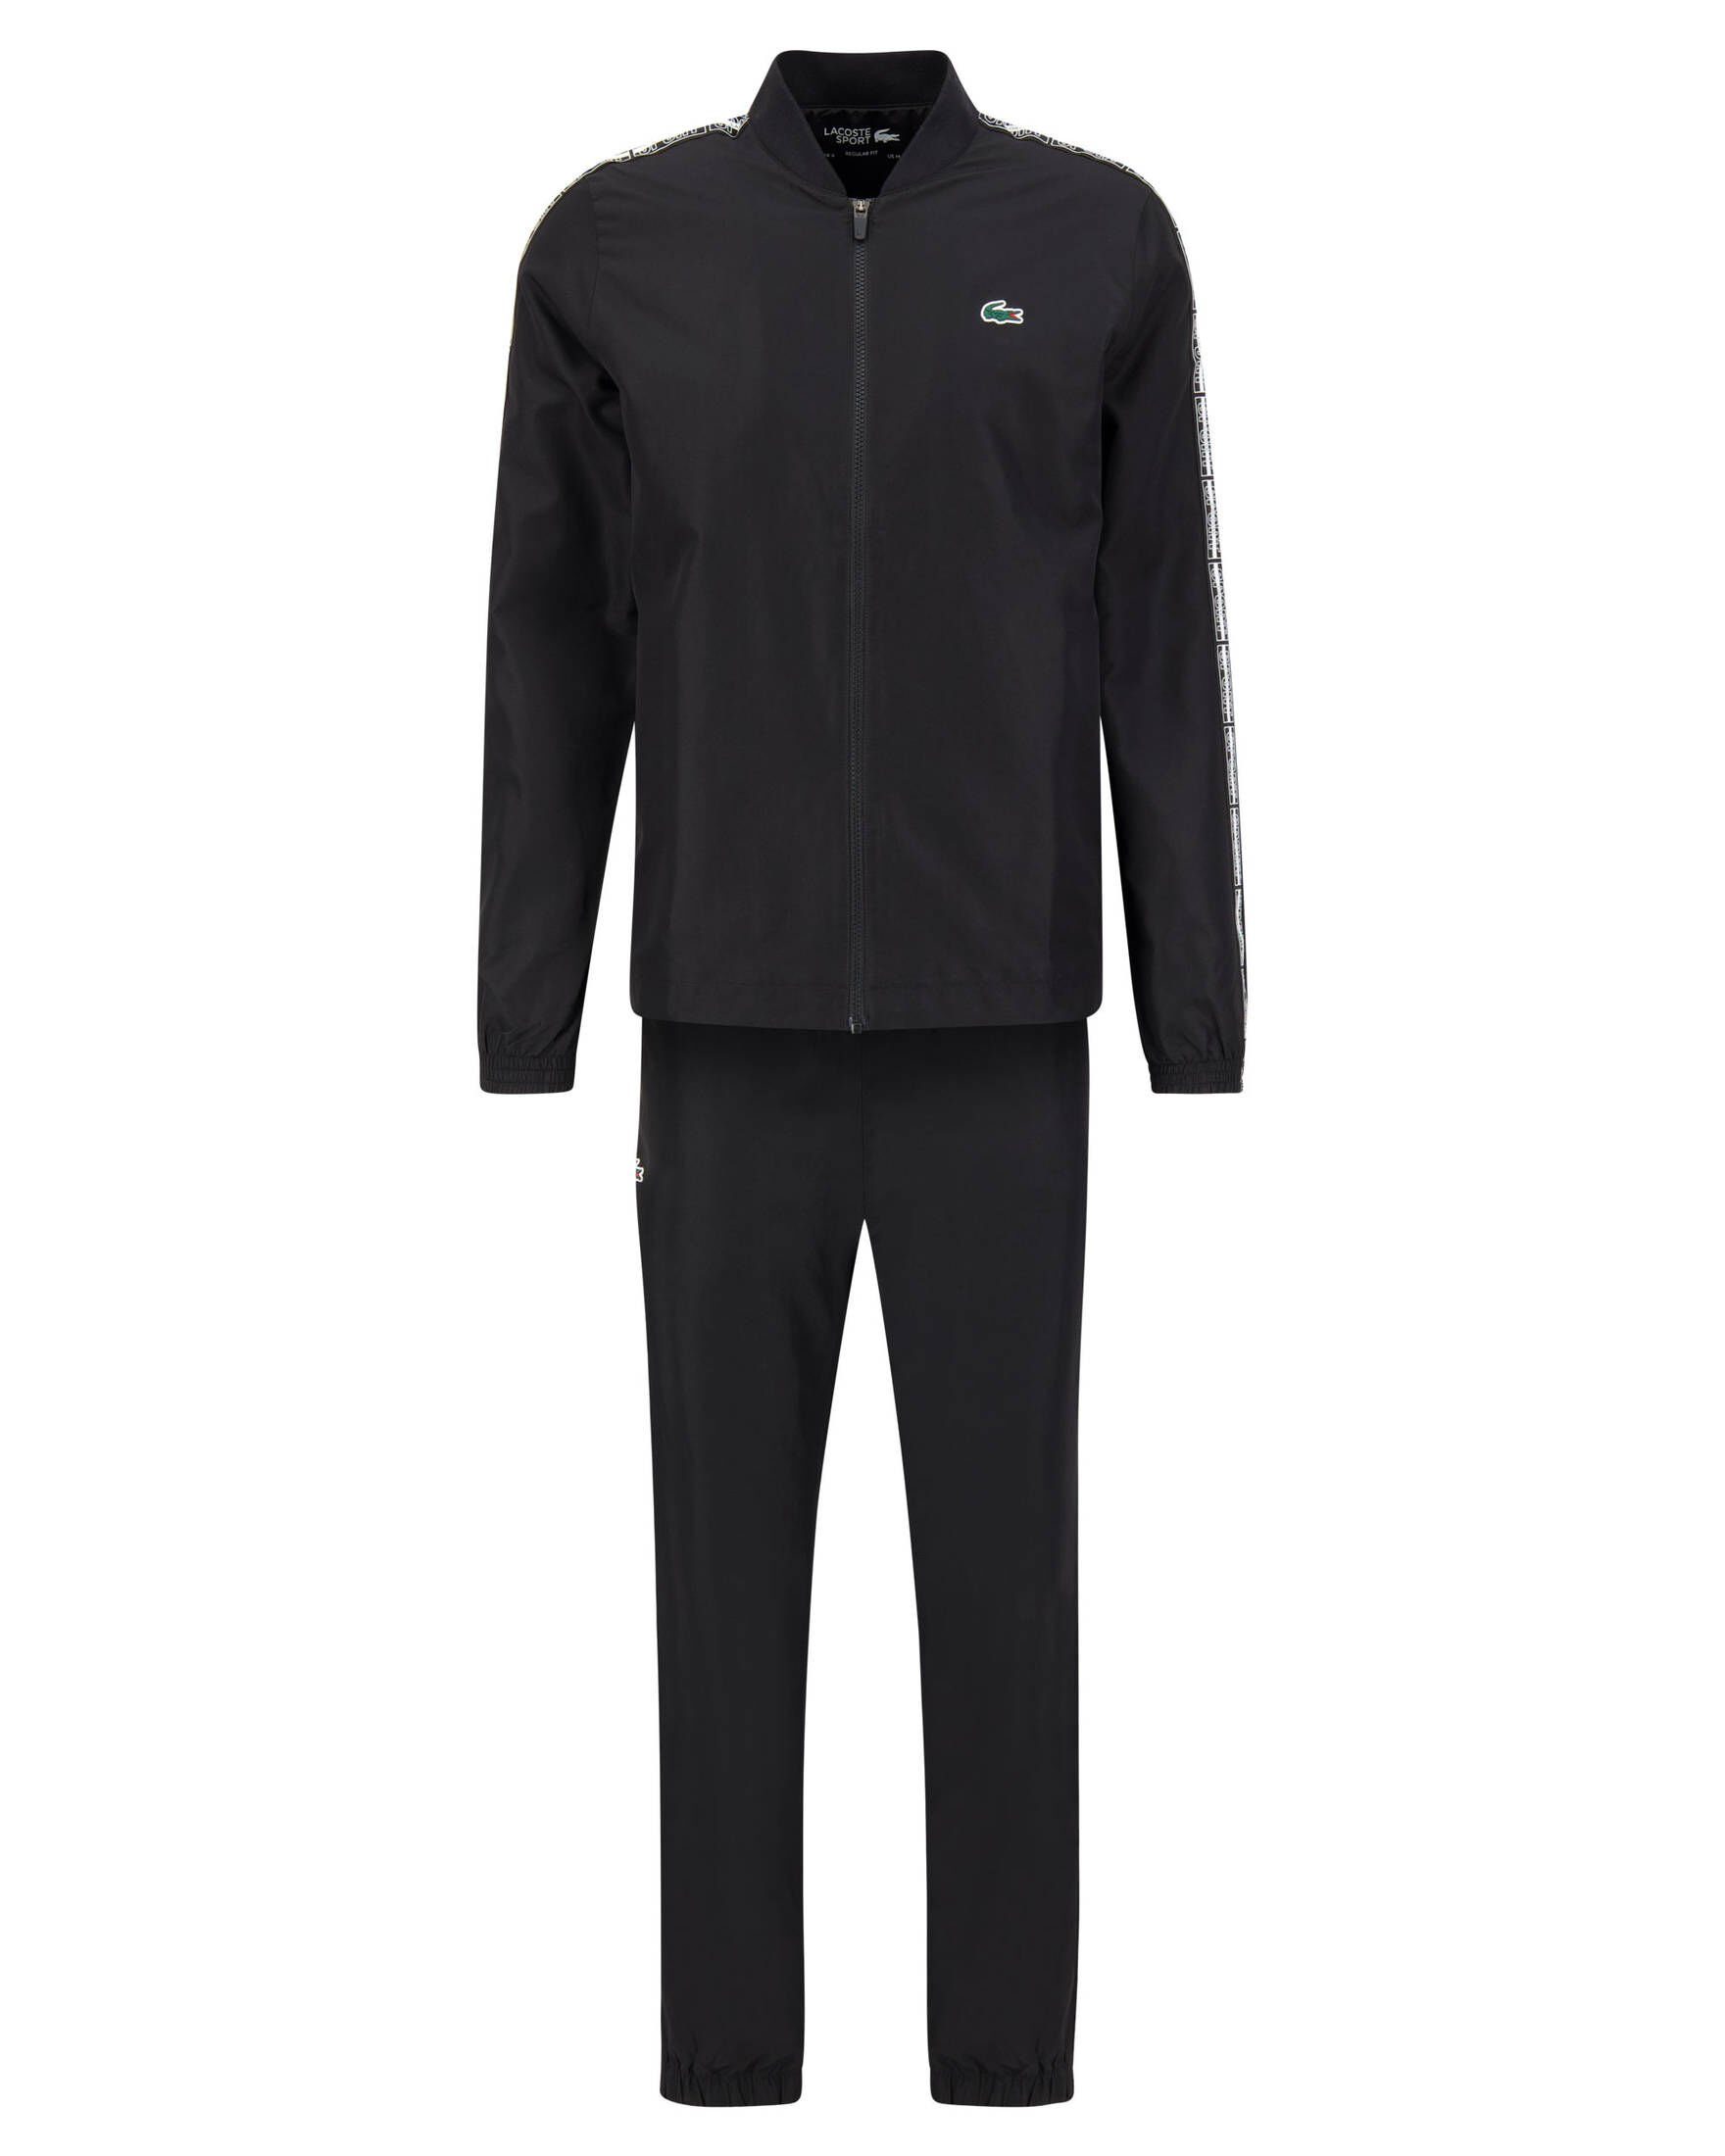 Lacoste Sport Trainingsanzug Herren Tennis-Anzug schwarz (200)